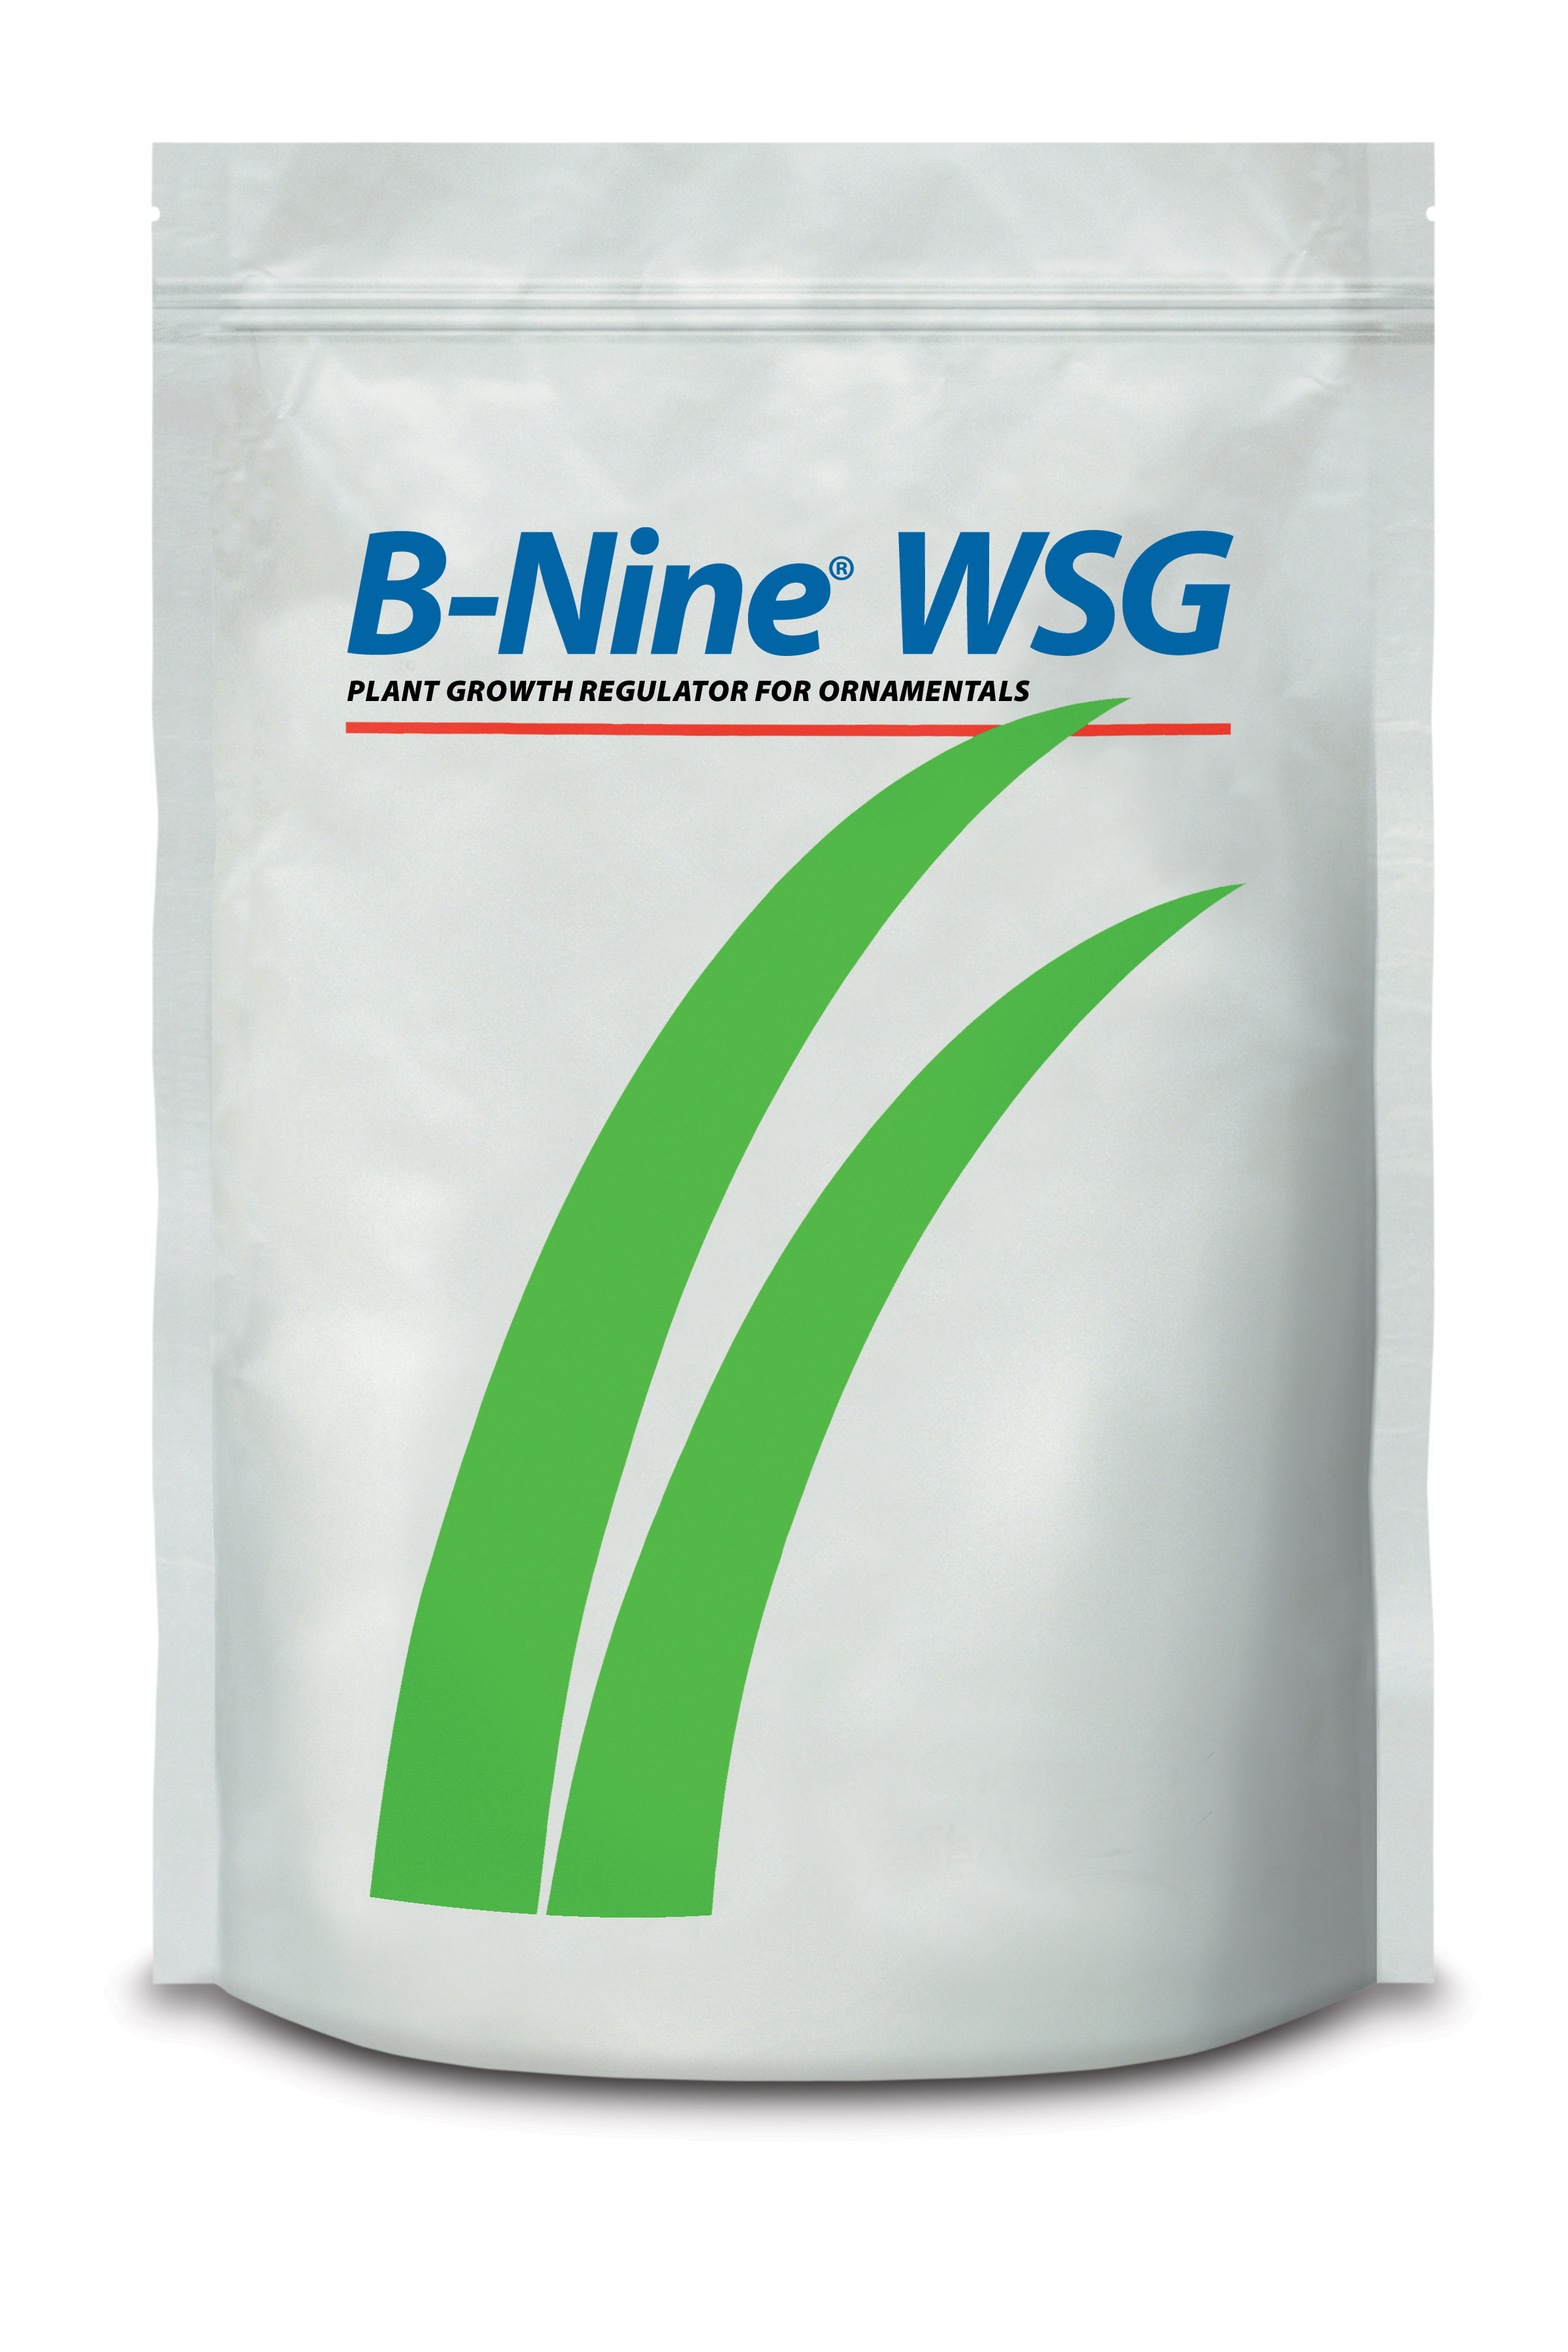 B-Nine® WSG 5 lb Bag - 8 per case